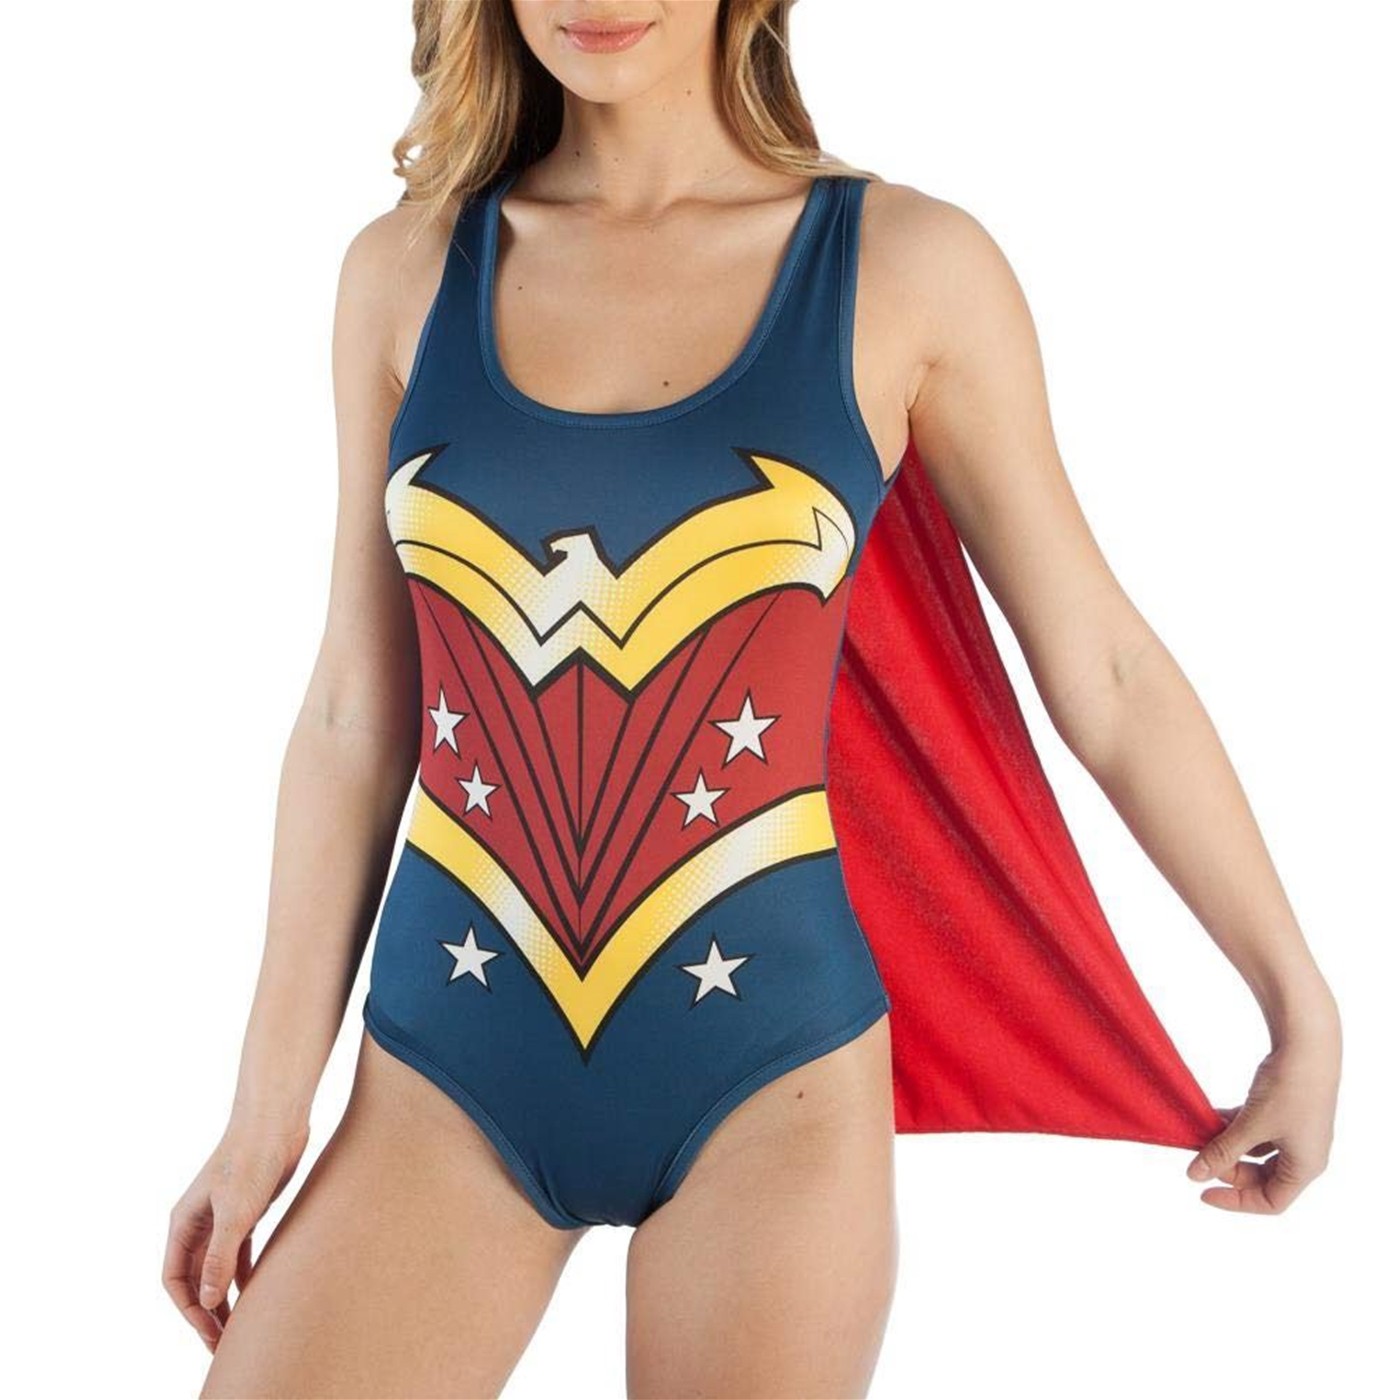 DC Comics Wonder Woman Bodysuit with Cape